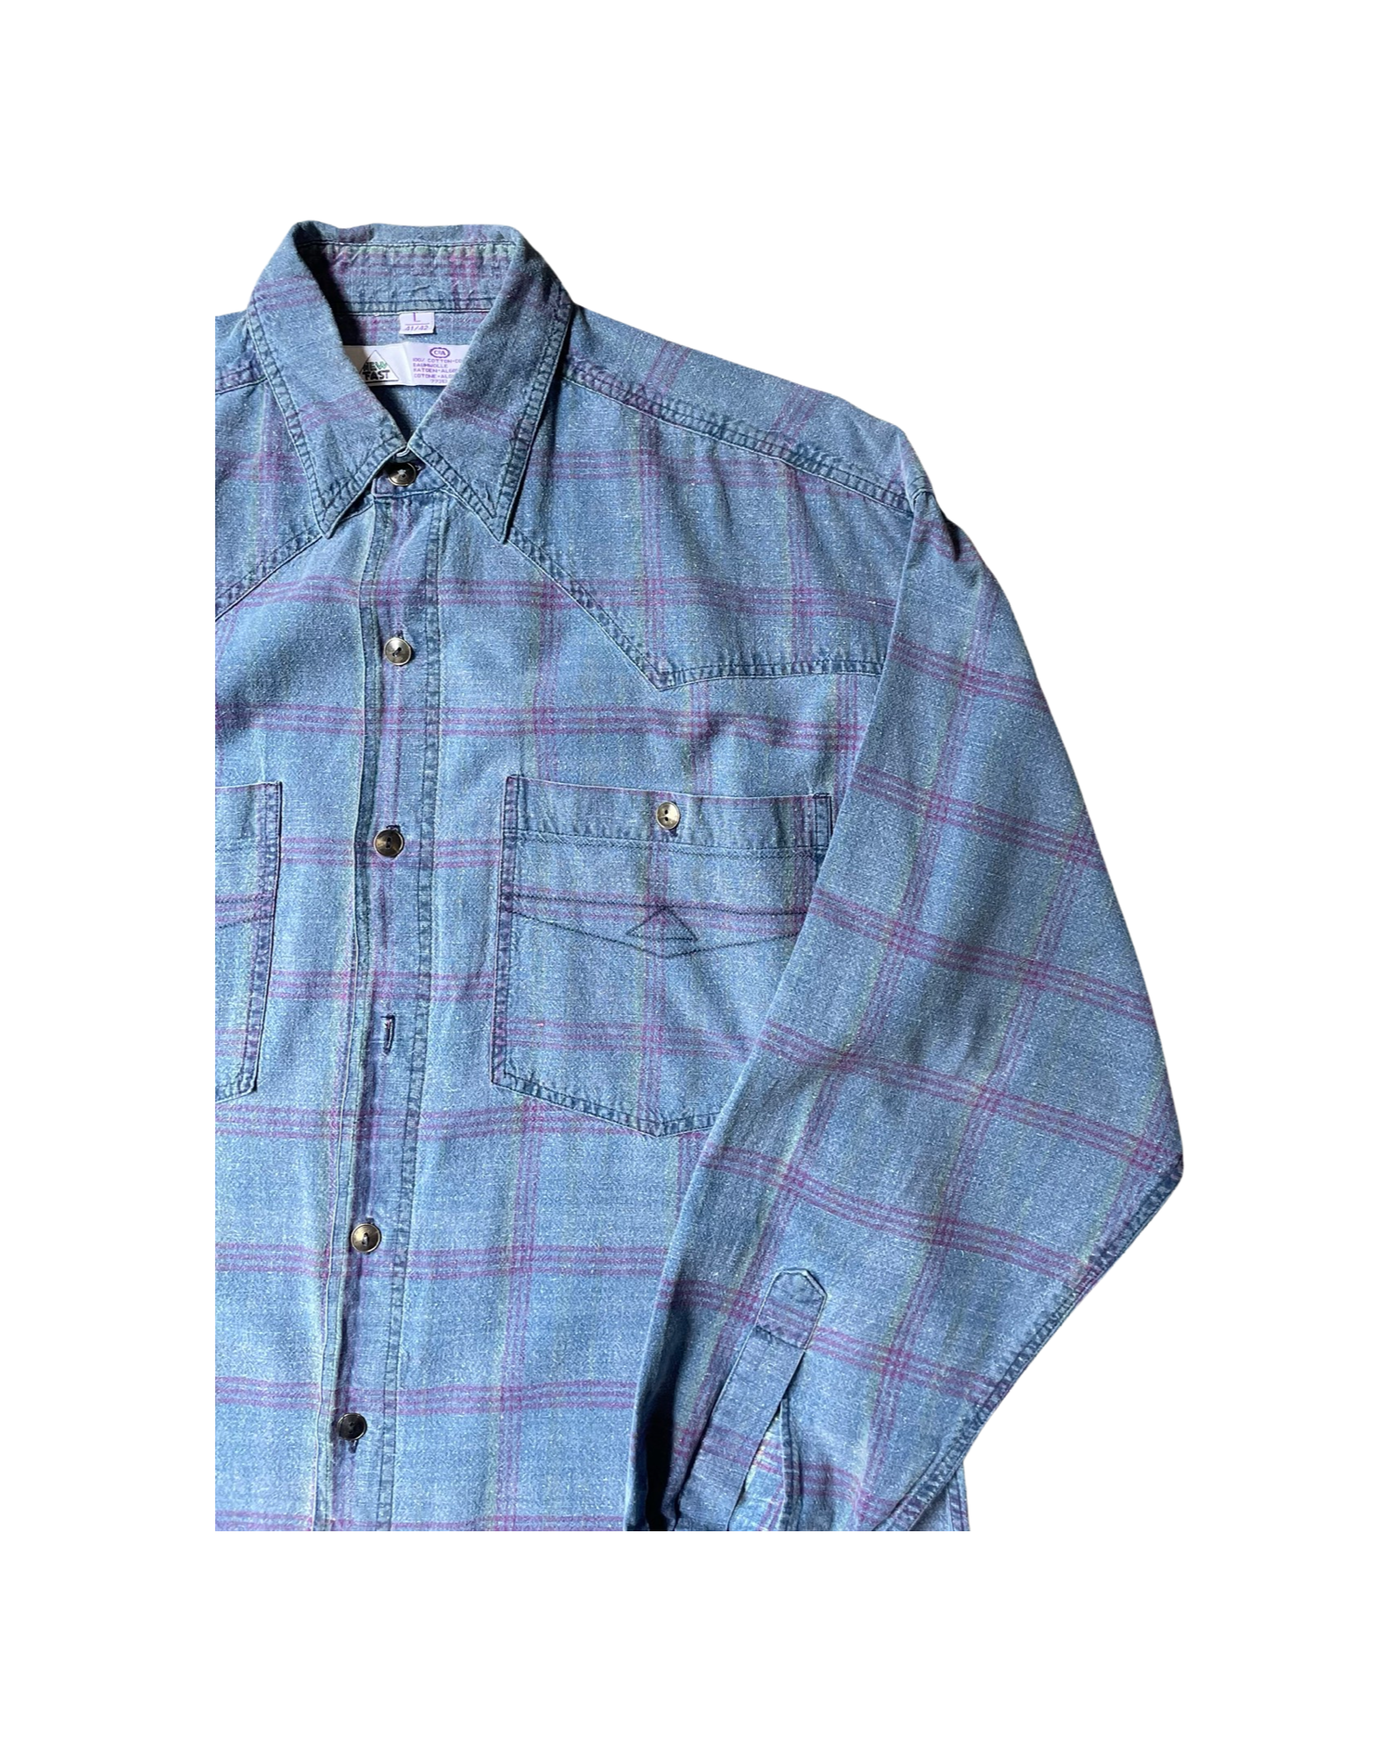 Vintage 90’s Check Shirt